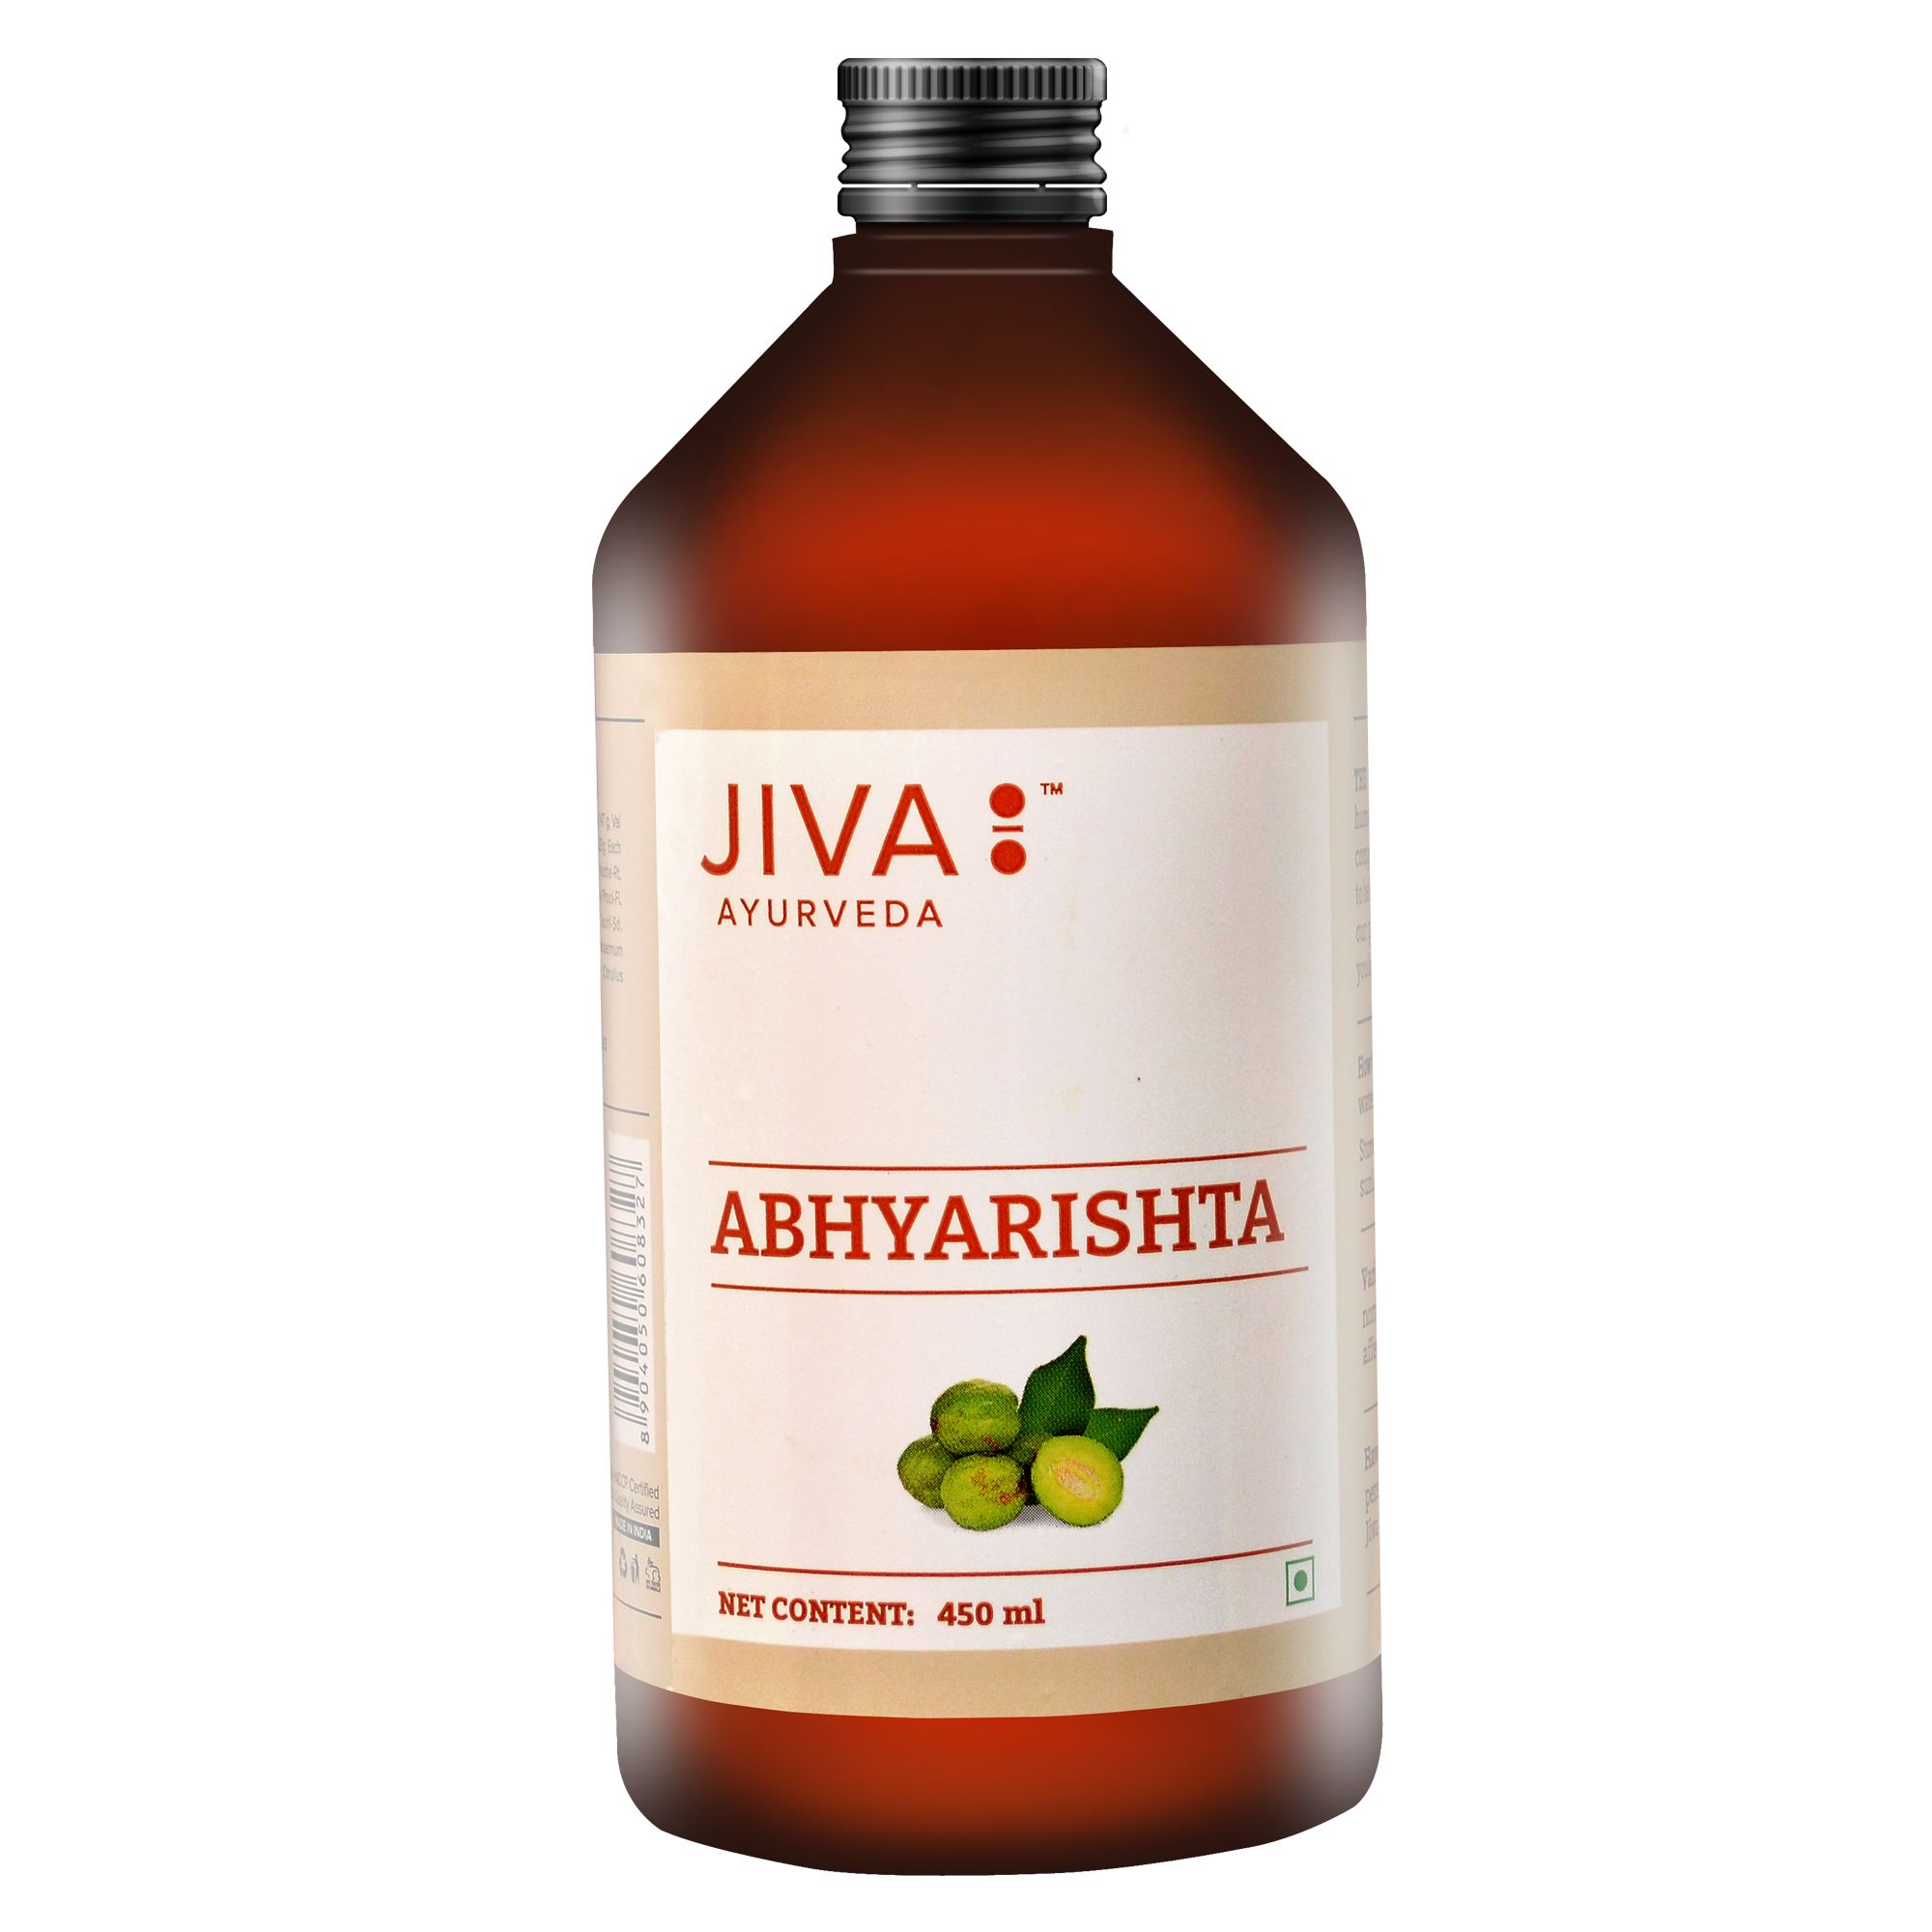 Buy Jiva Ayurveda Abhyarishta at Best Price Online